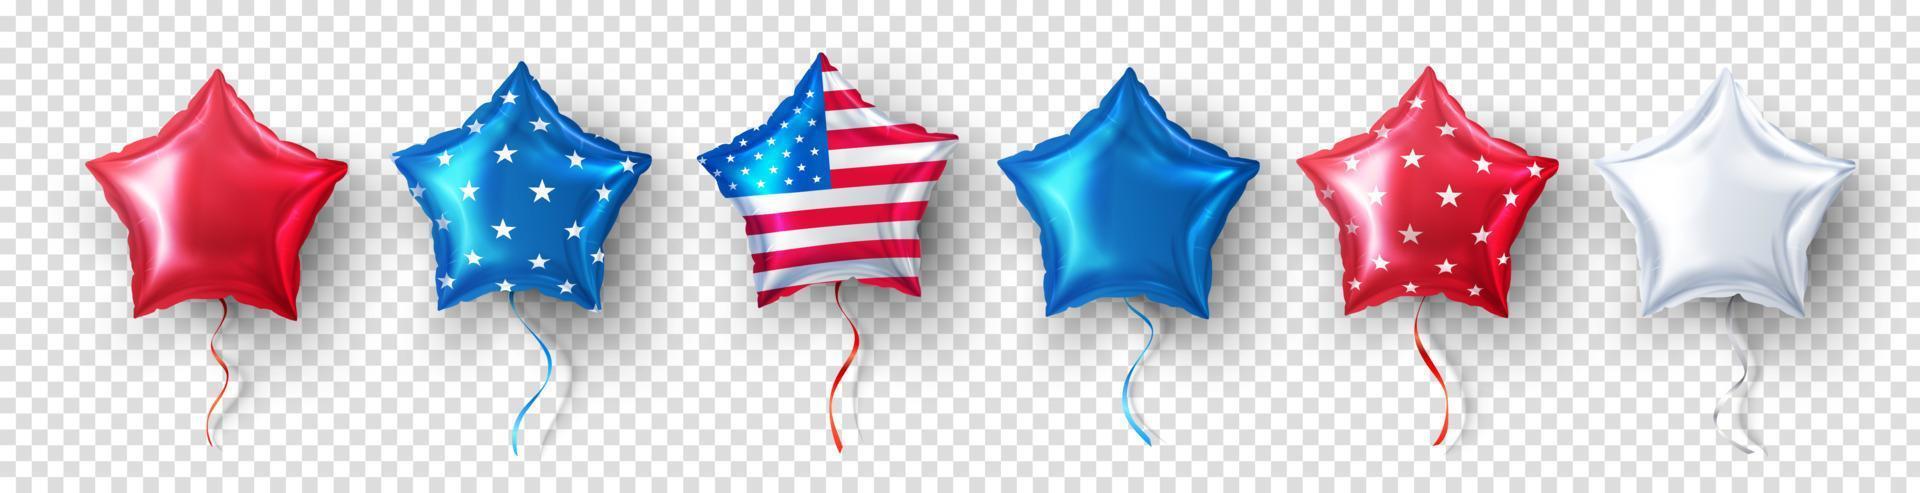 amerikanischer sternballon für usa partyballons eventdekoration auf transparentem hintergrund. partydekorationen vierter juli, usa unabhängigkeitstag, gedenktag, feier, jahrestag oder amerikanisches ereignis. vektor